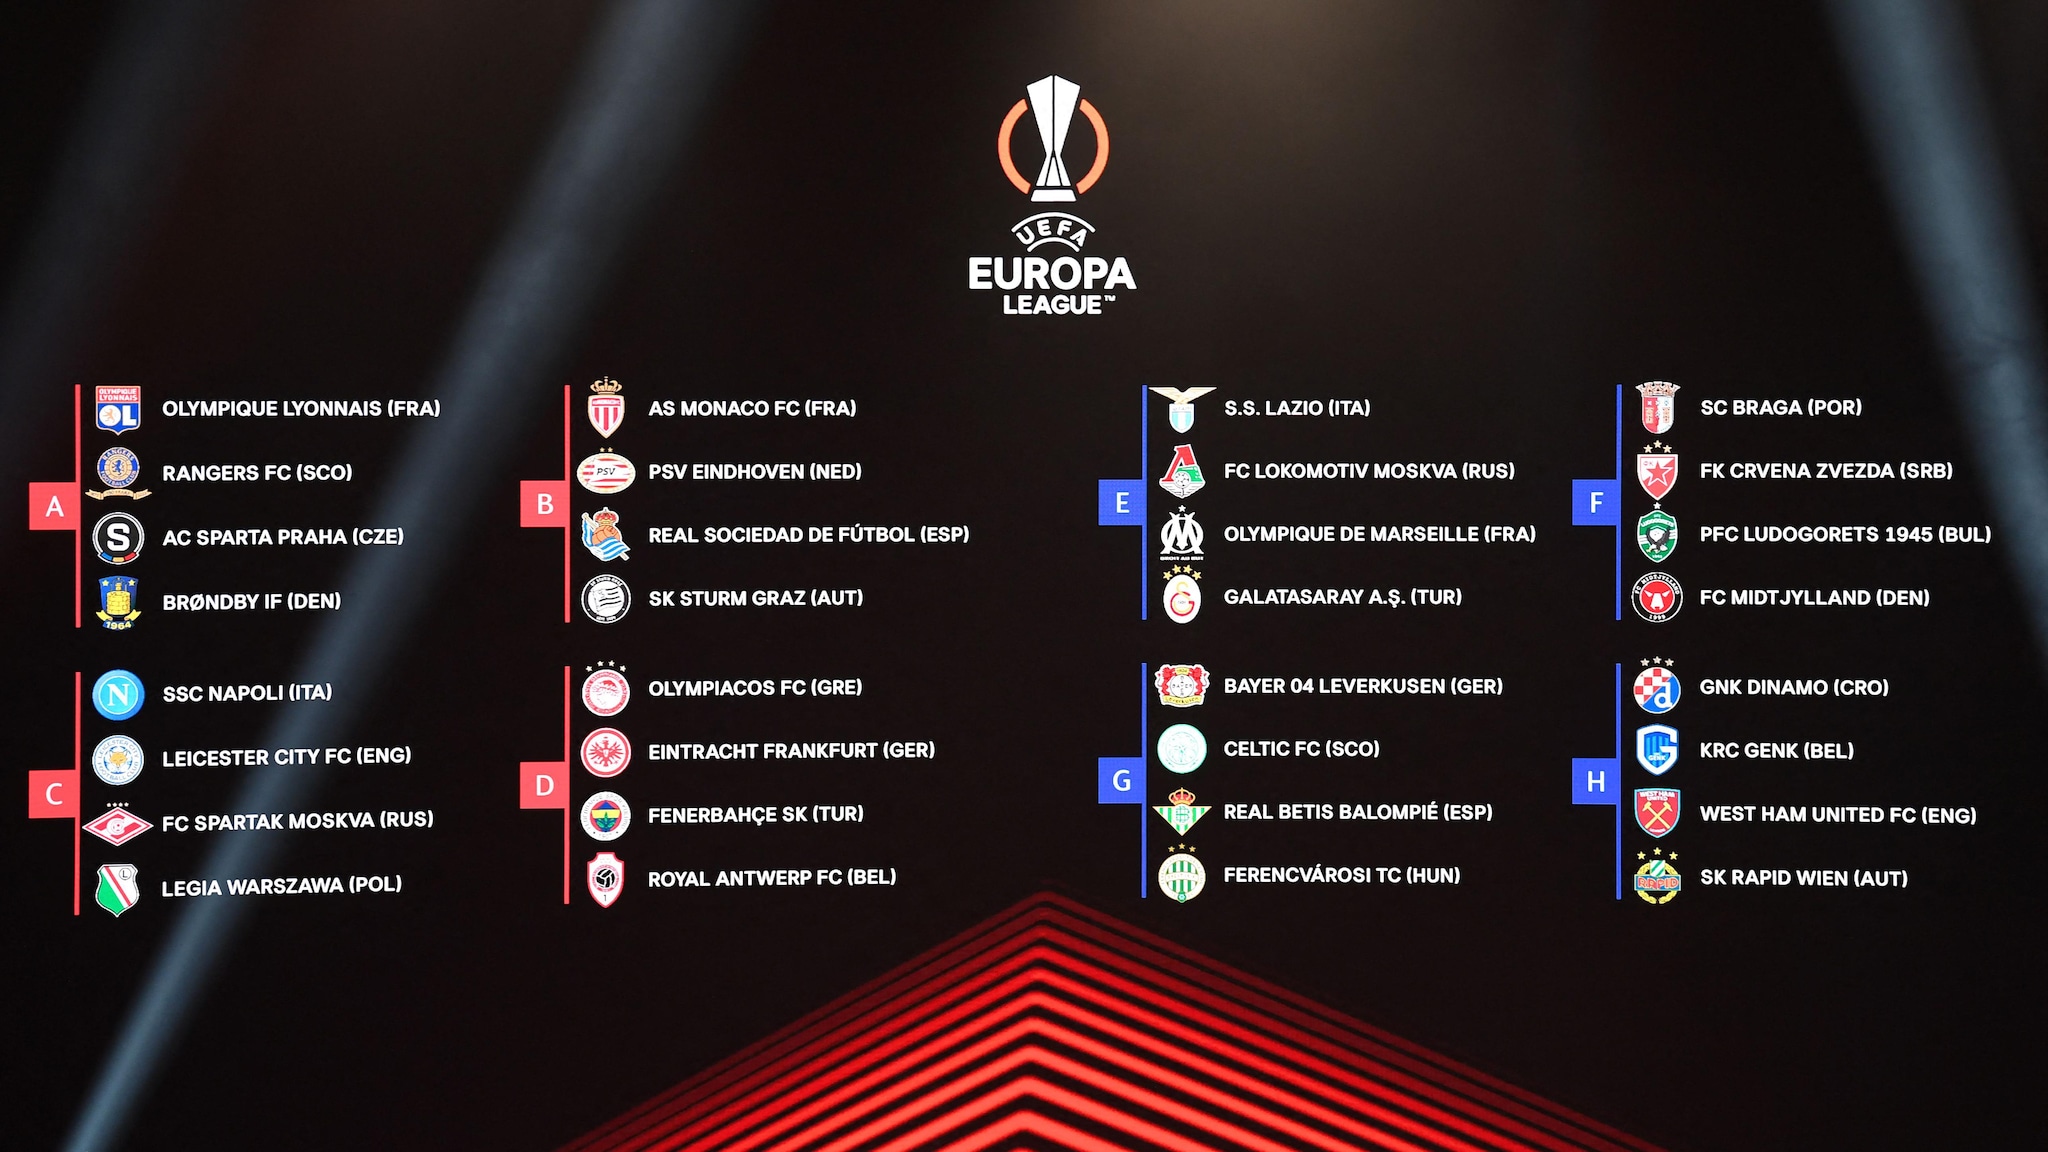 Europa League group stage draw | UEFA Europa League | UEFA.com